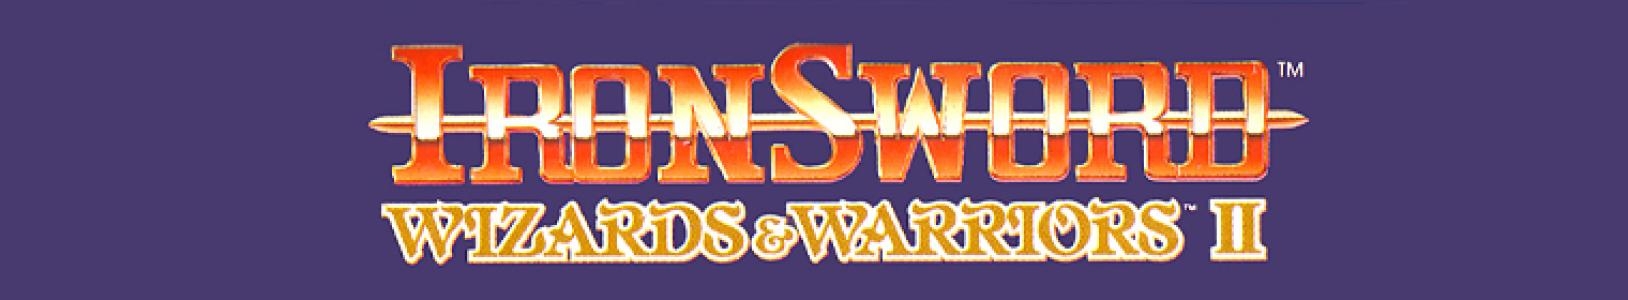 Ironsword: Wizards & Warriors II banner